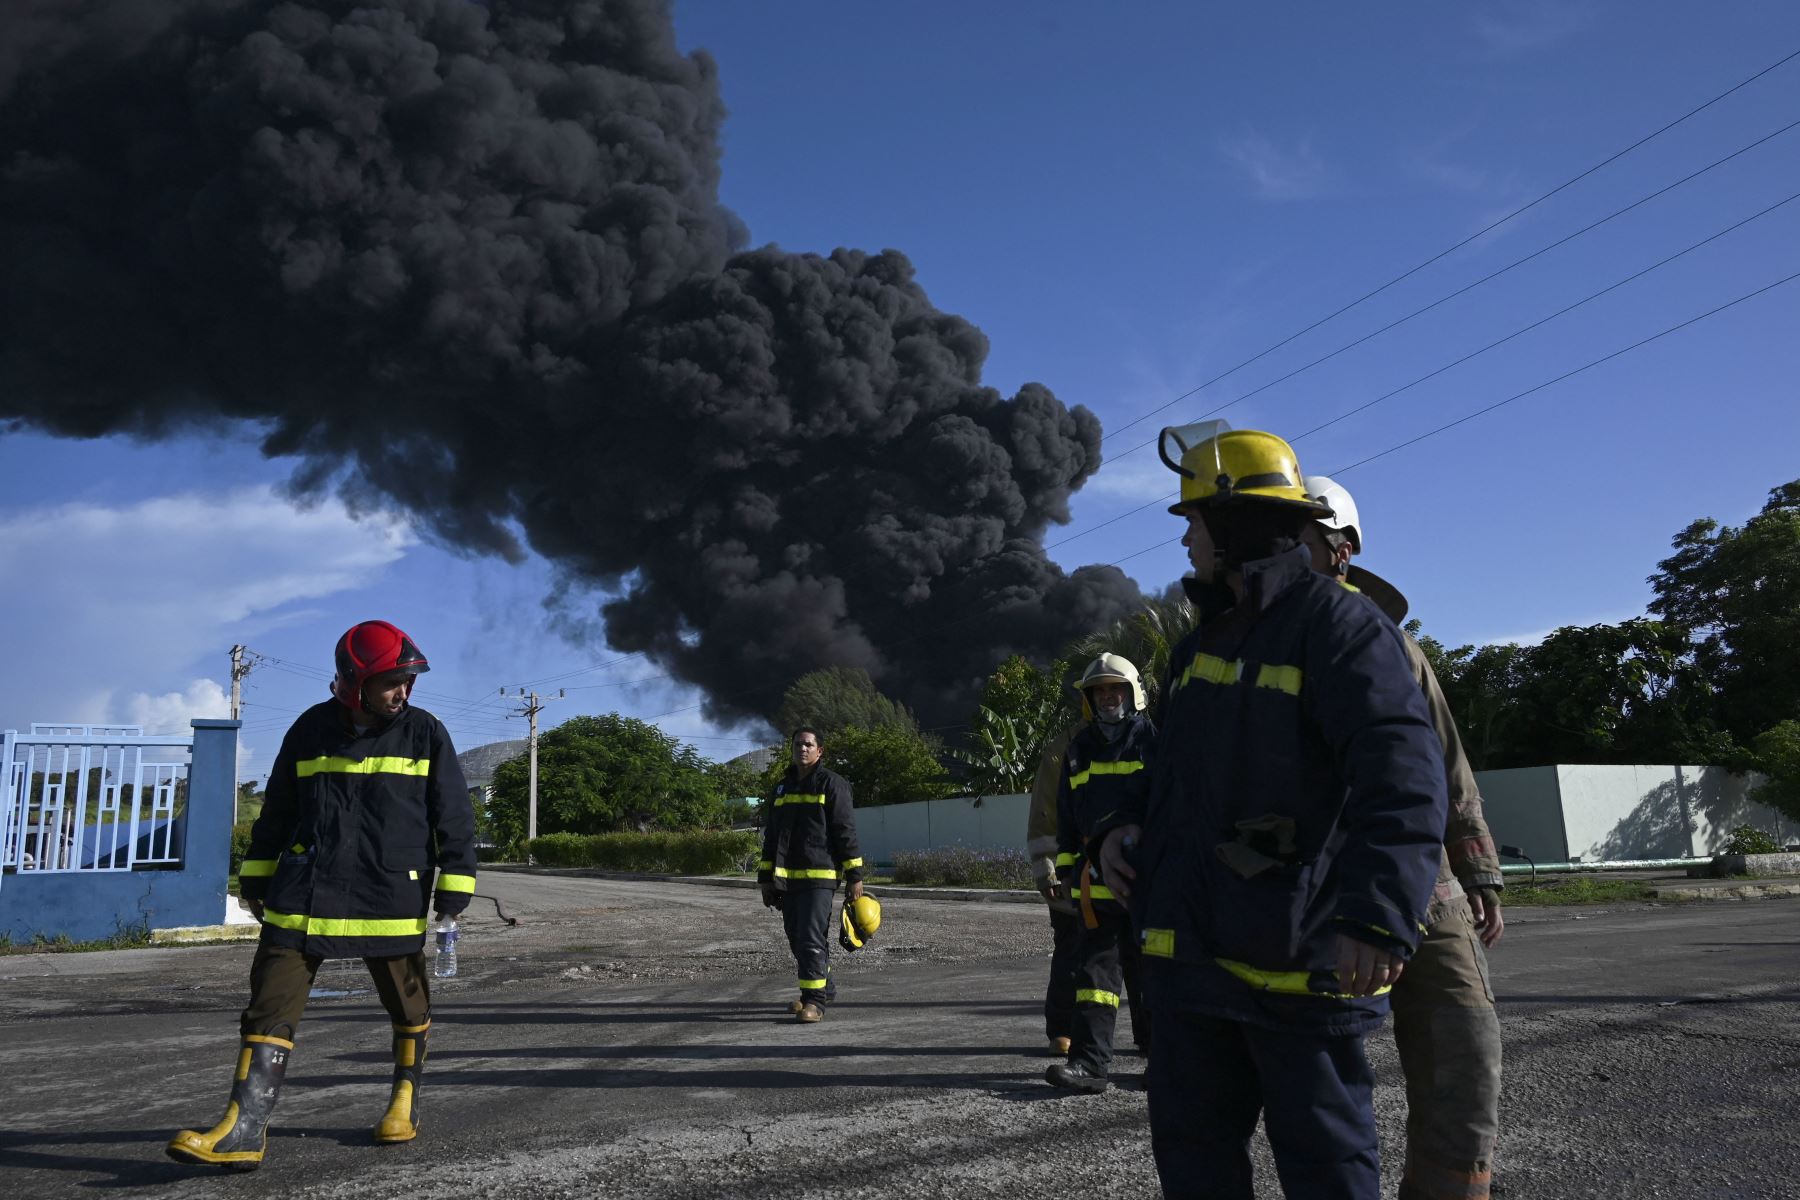 Los bomberos se ven cerca de un tanque de petróleo en llamas en Matanzas, Cuba. El incendio provocado por un rayo el viernes en un depósito de combustible en Matanzas, en el oeste de Cuba, se extendió a un segundo tanque en la madrugada de este sábado y causó 49 heridos, informaron fuentes oficiales.
Foto: AFP